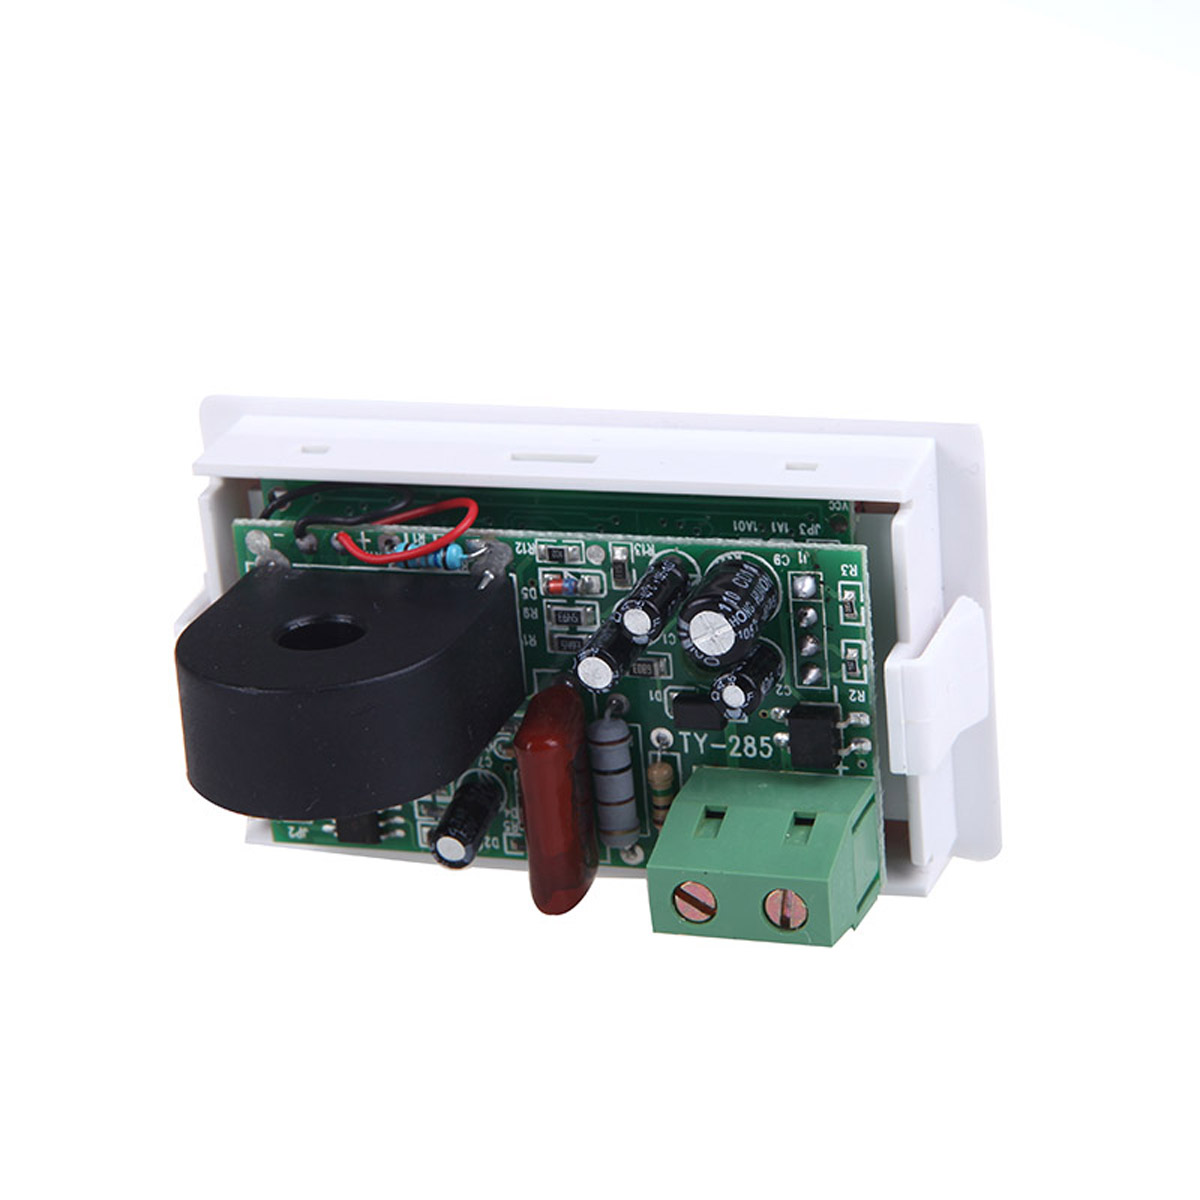 D85-2041-LCD-Display-Digital-AC100-300V-50A-Ammeter-Voltmeter-Meter-Tester-Amp-Panel-Meter-With-Blue-1443865-4